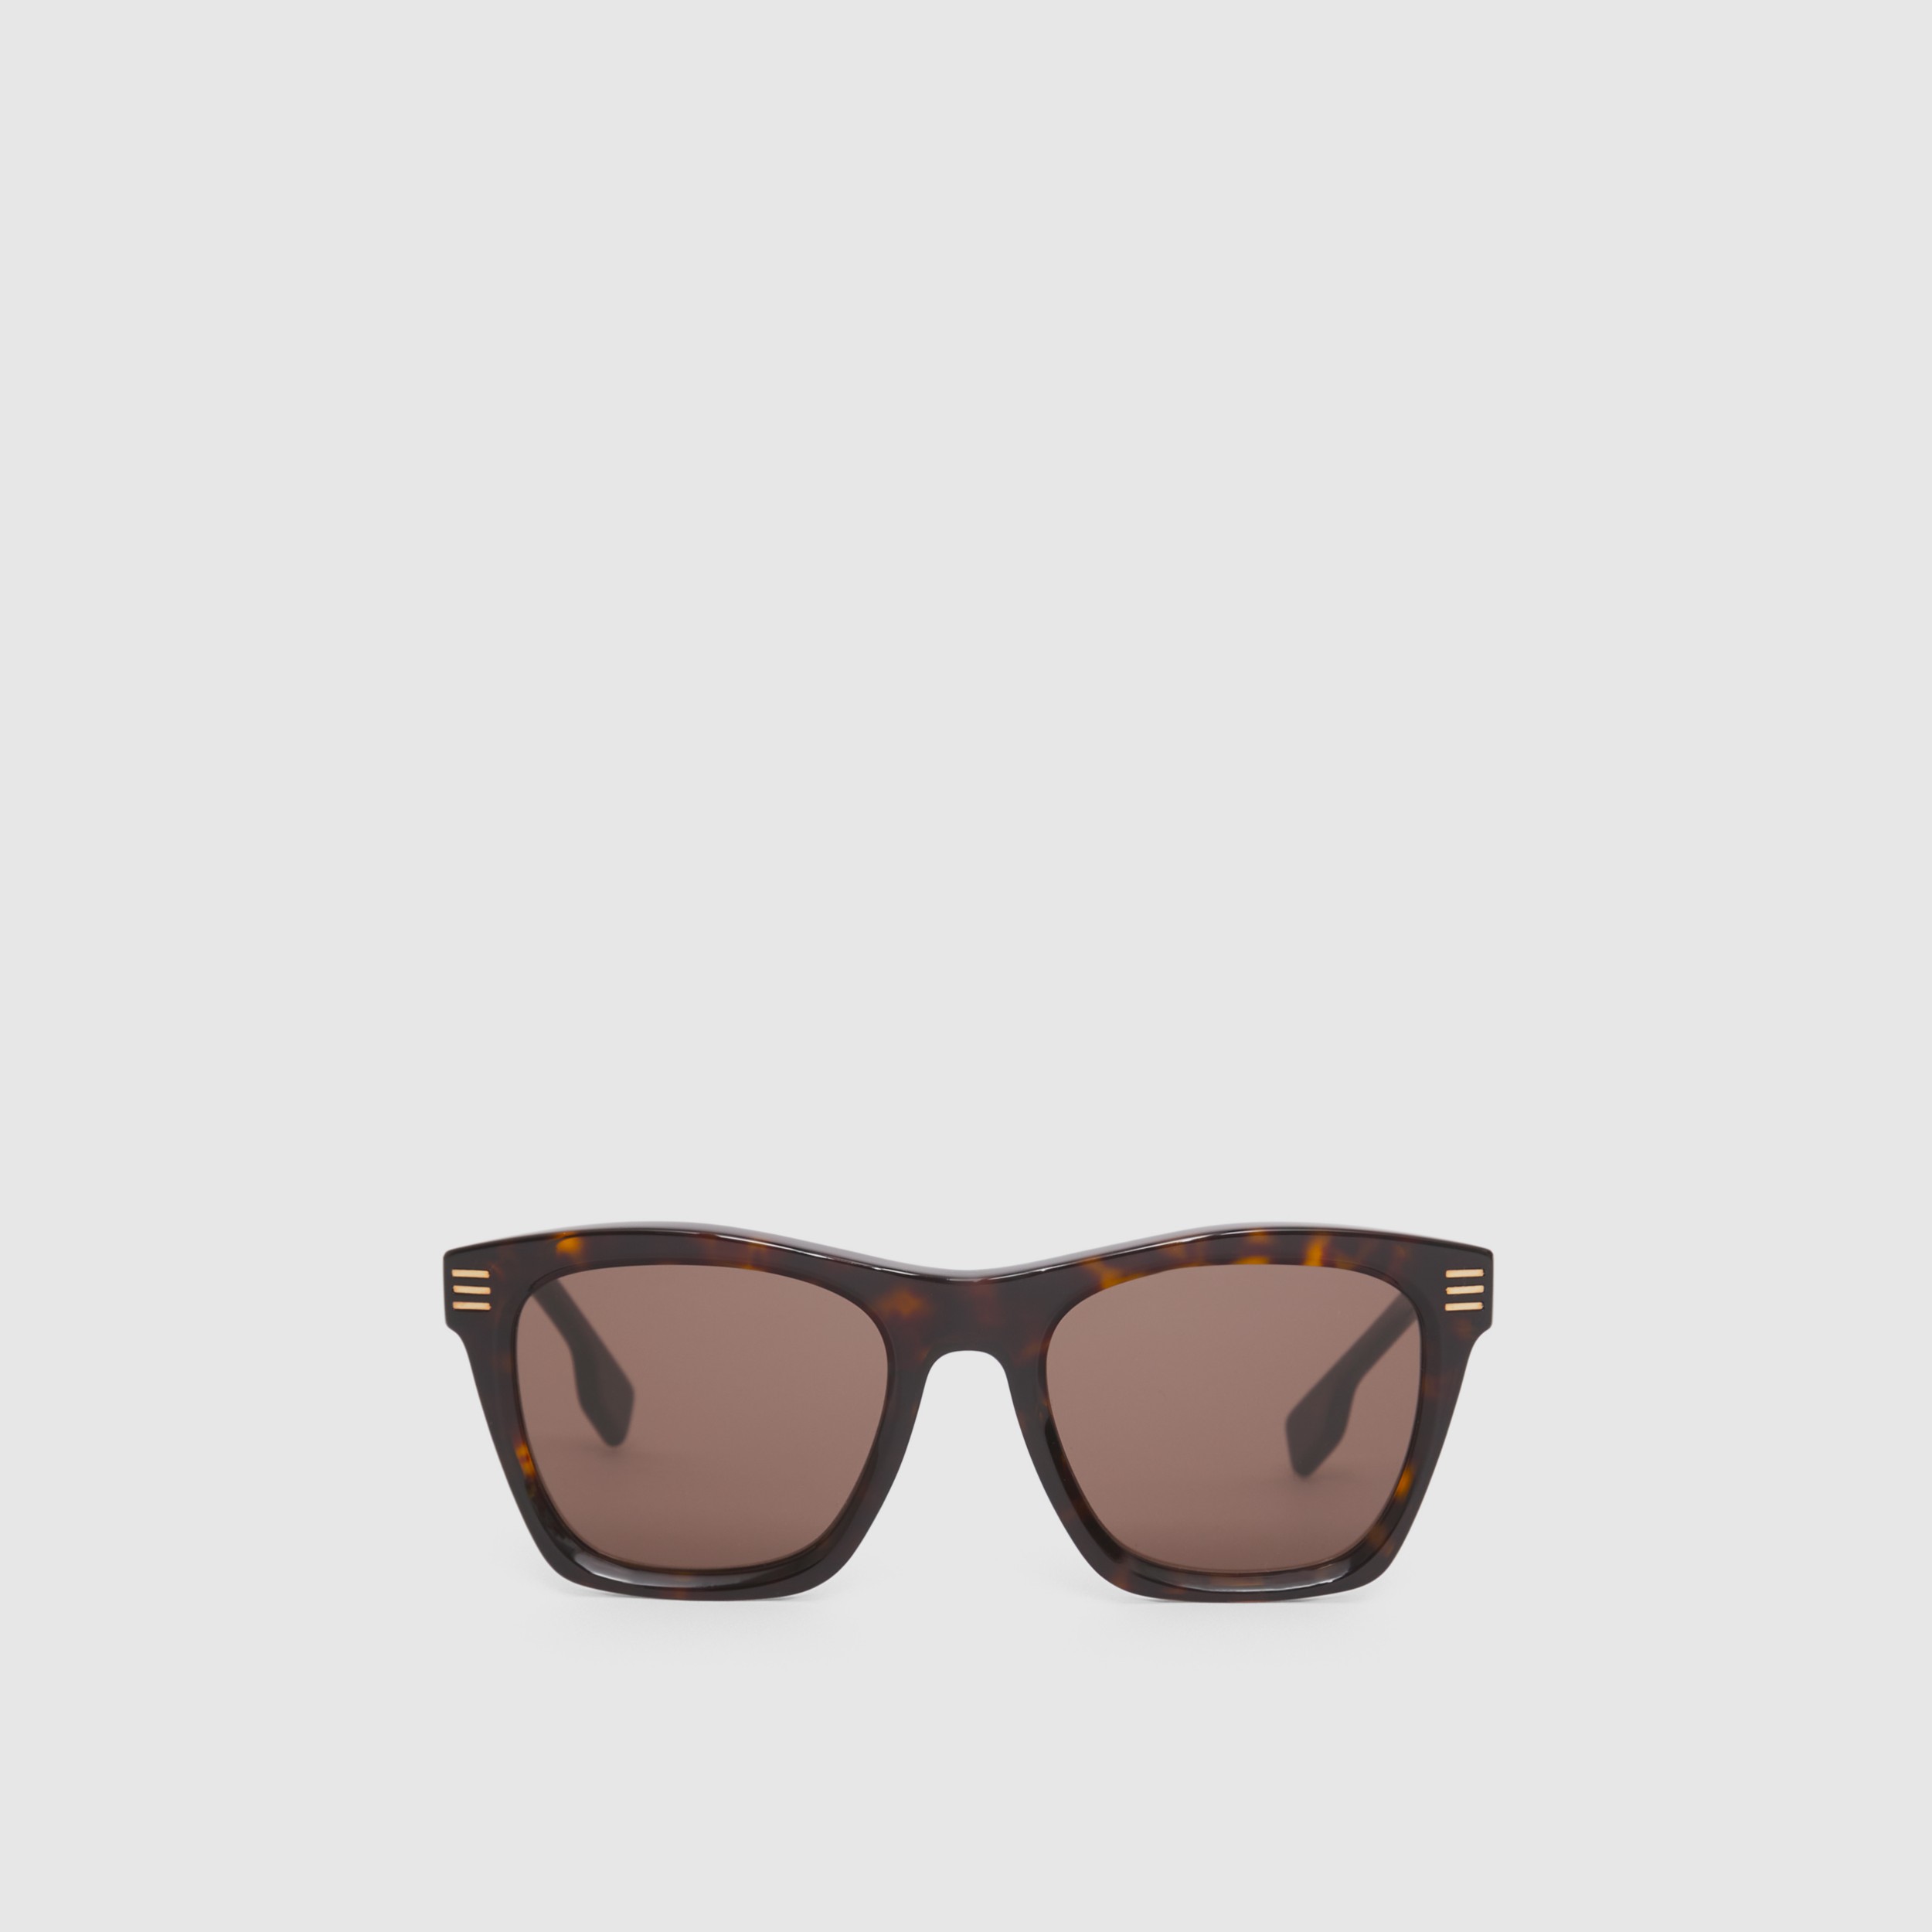 Top 42+ imagen burberry sunglasses